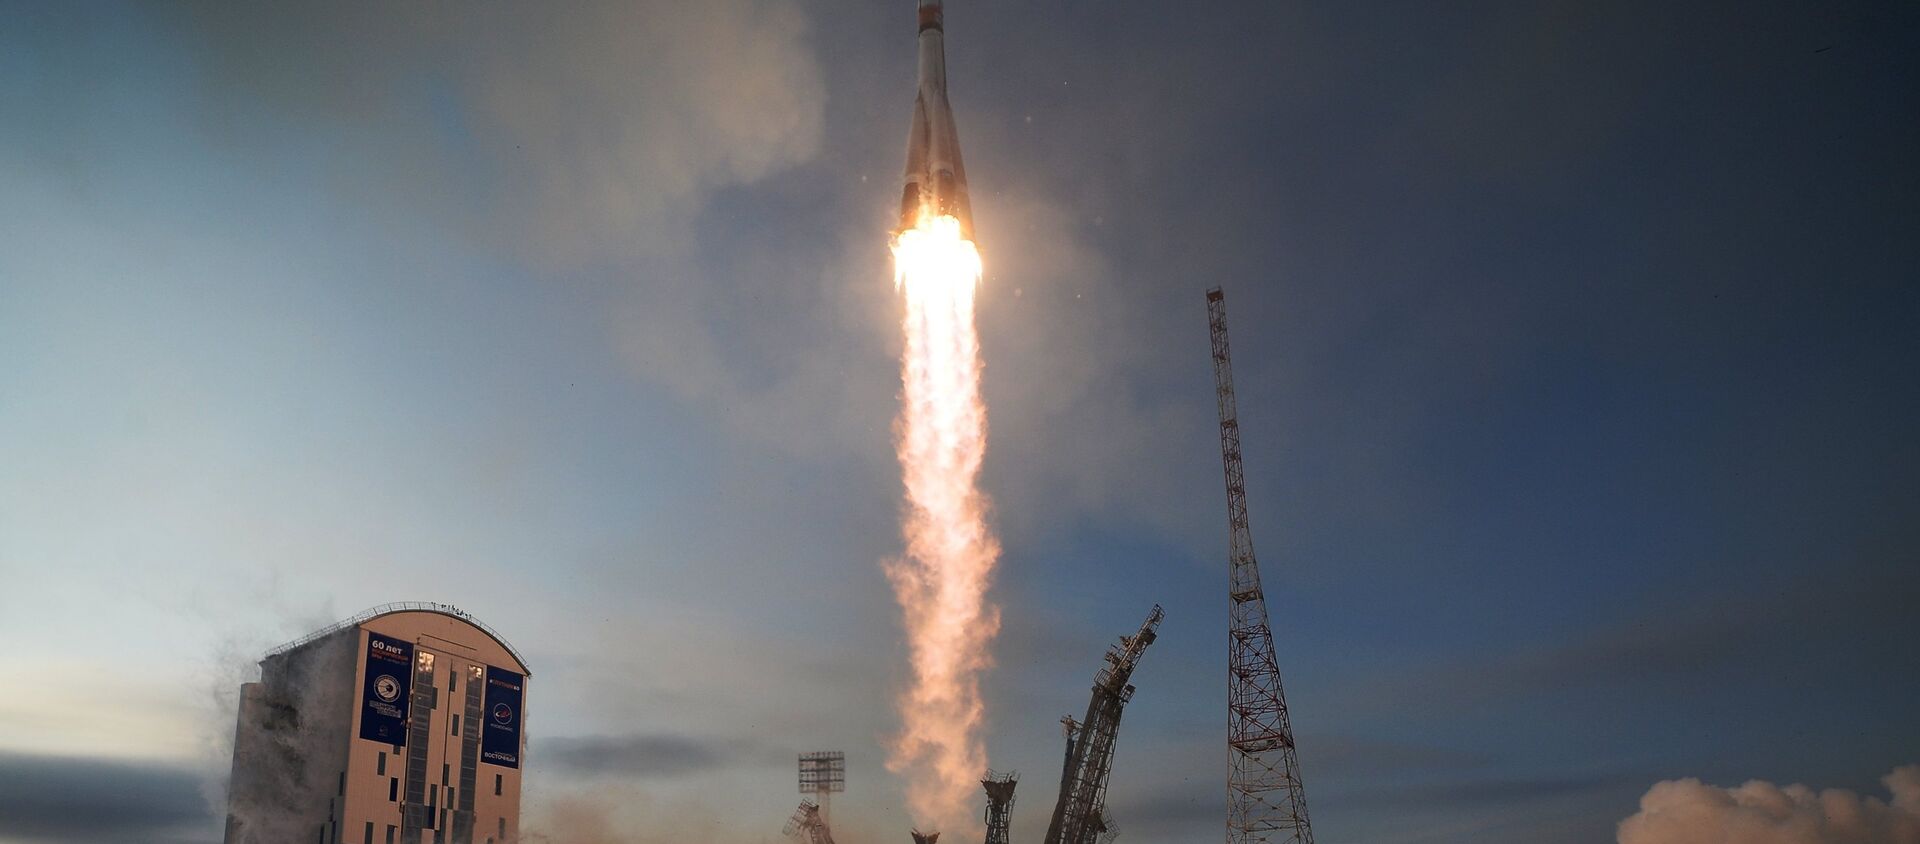 Lanzamiento del cohete Soyuz 2.1b desde el cosmódromo Vostochni el 28 de noviembre de 2017 - Sputnik Mundo, 1920, 24.05.2020